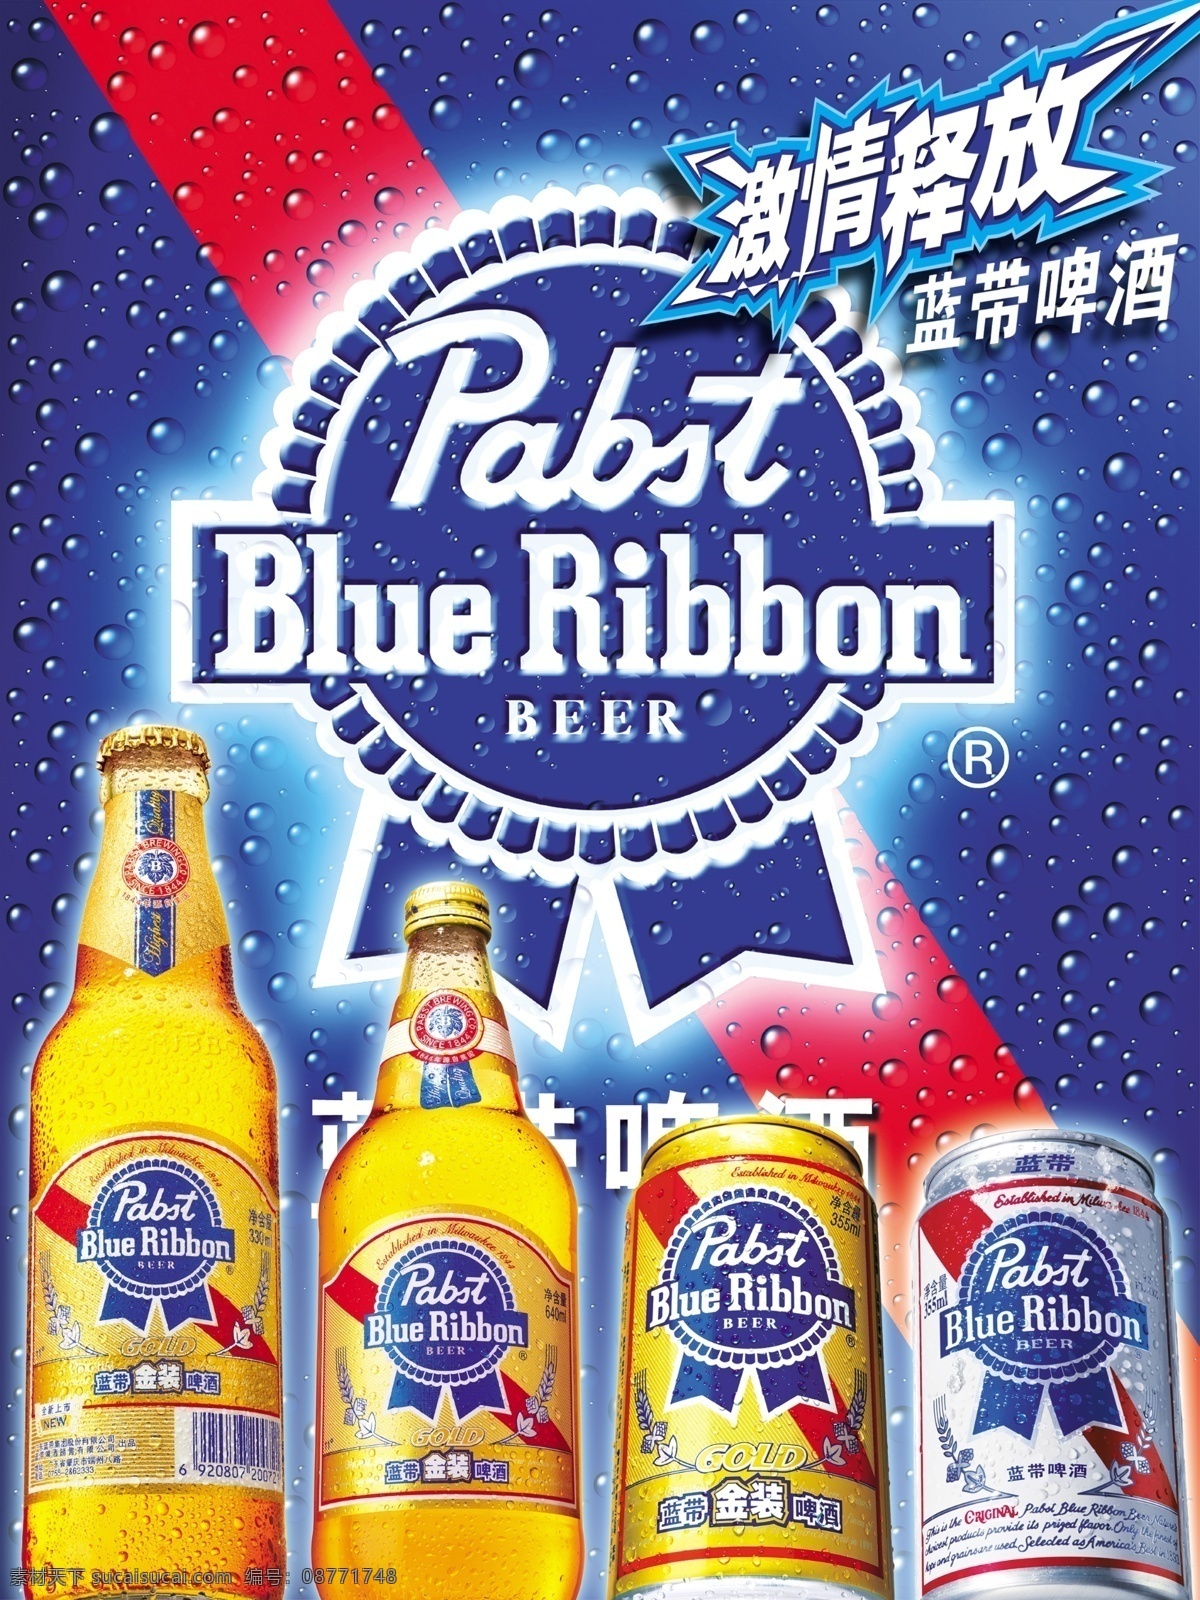 蓝带啤酒广告 蓝带啤酒 蓝带 啤酒广告设计 灯箱 瓶装啤酒 罐装啤酒 啤酒 分层 源文件库